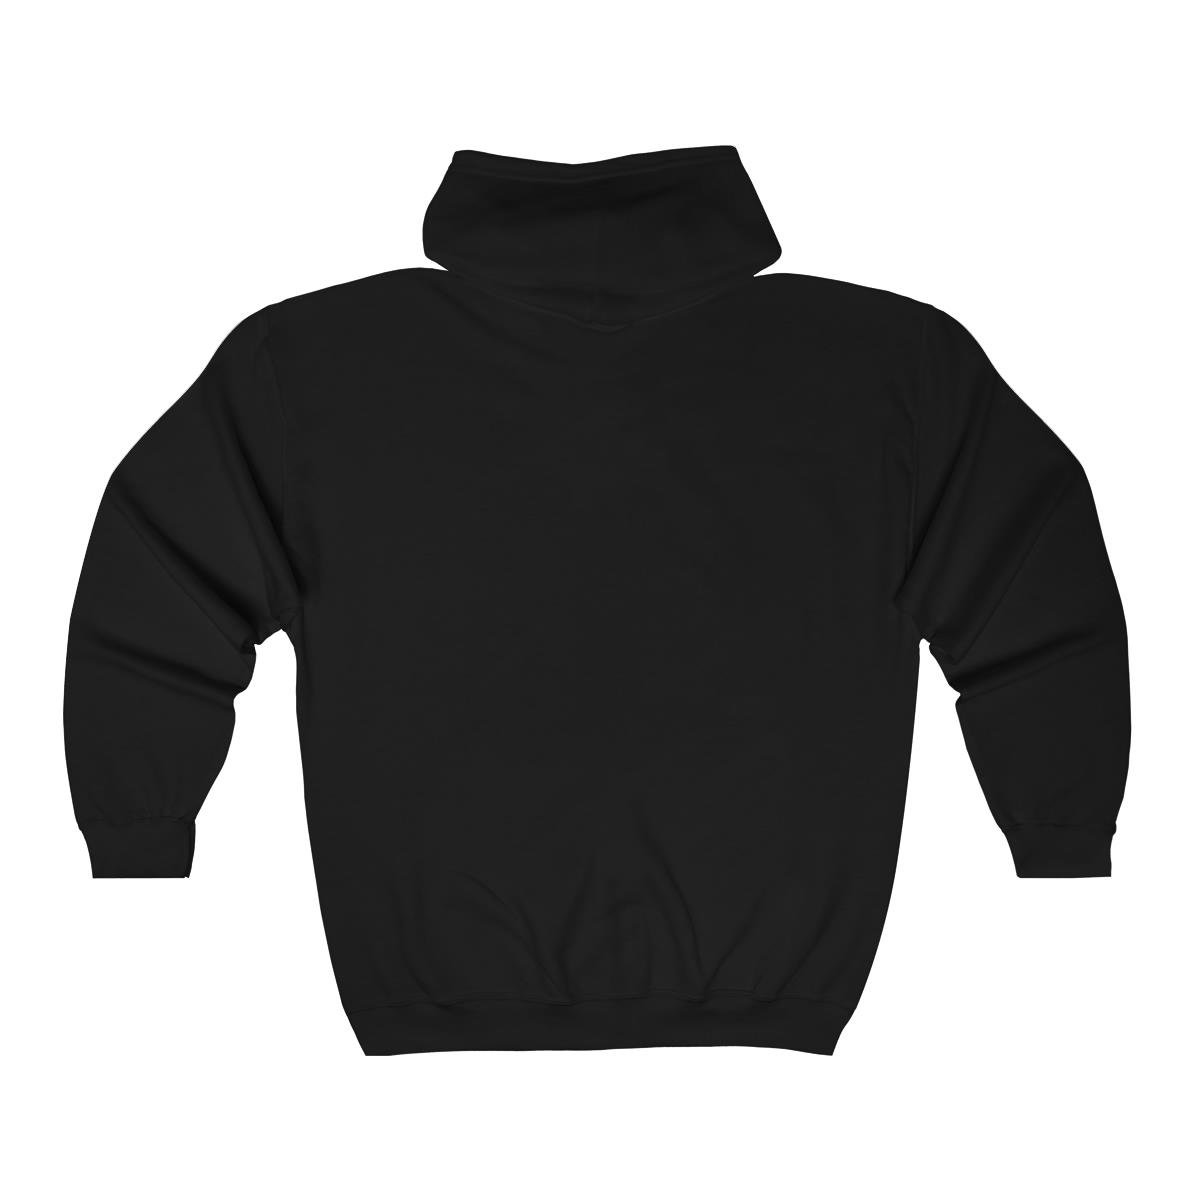 Ignescent – Remnant Full Zip Hooded Sweatshirt